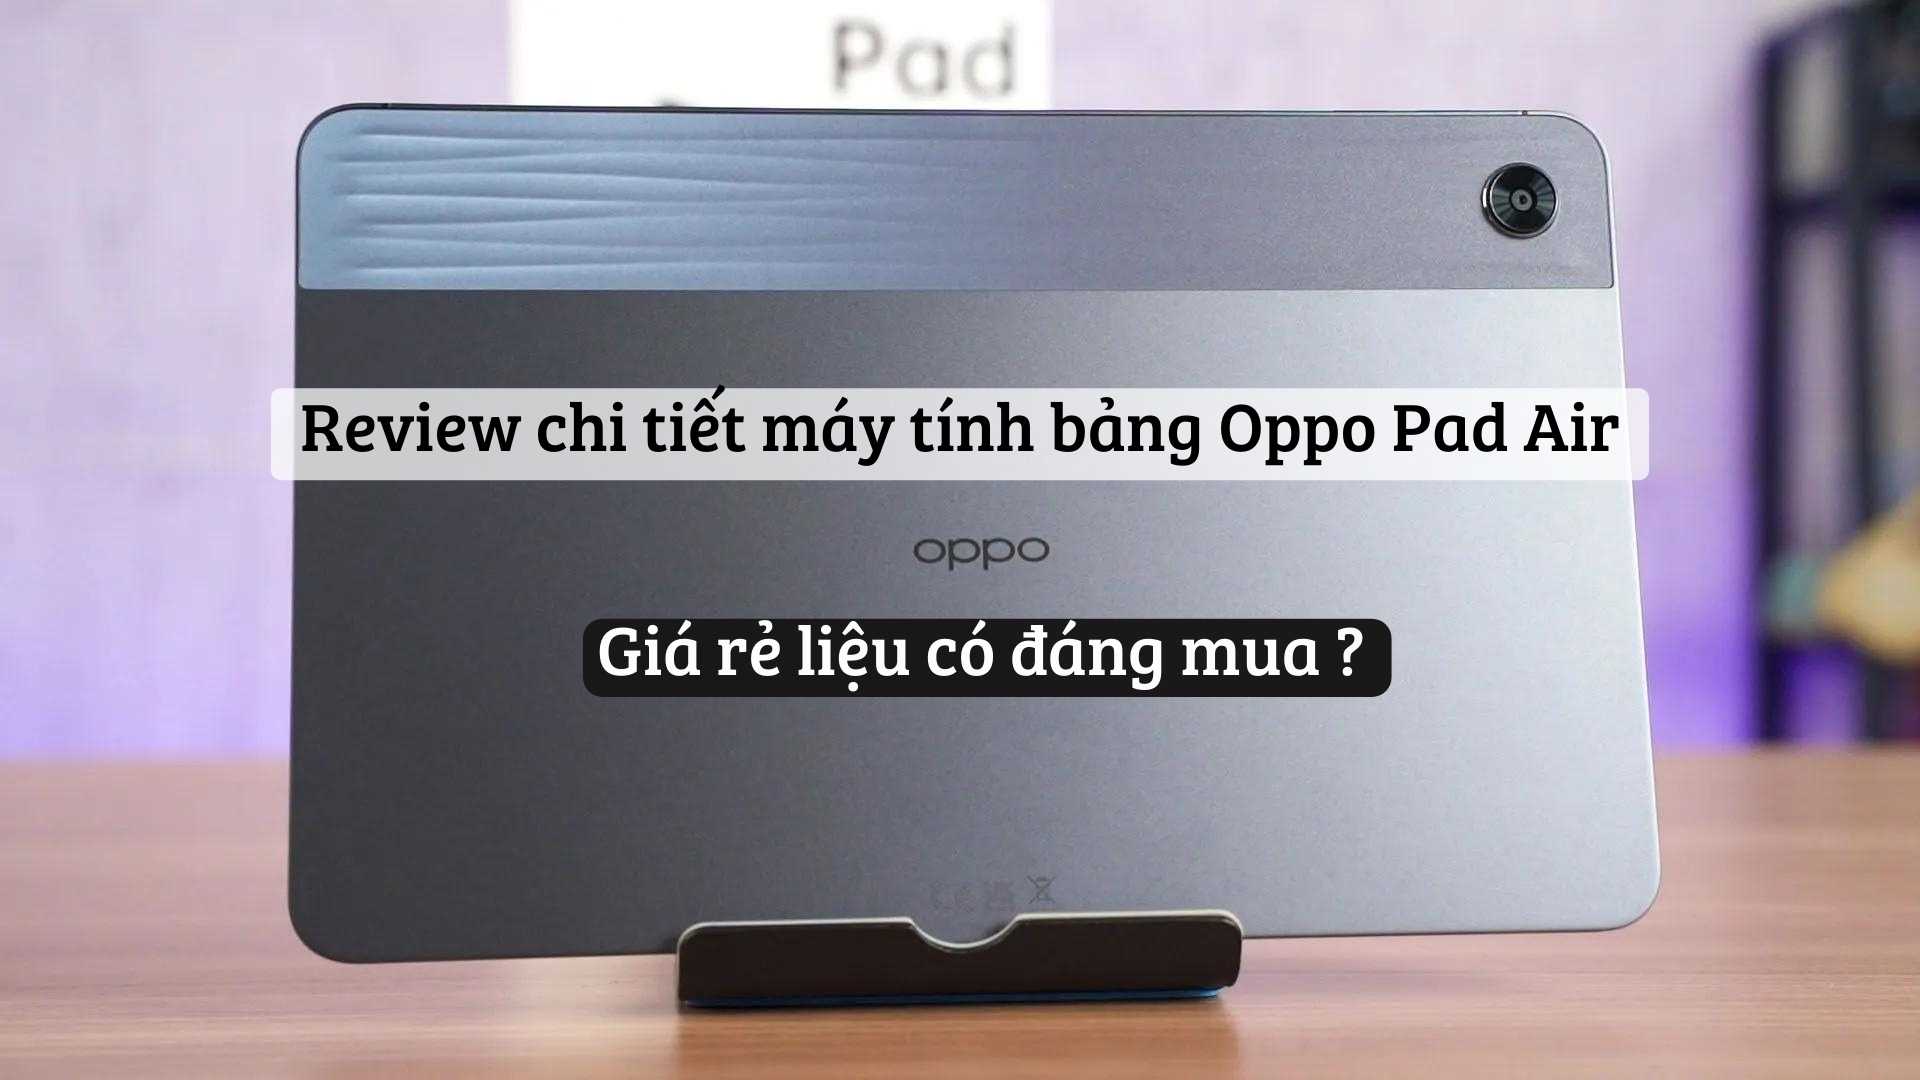 Review chi tiết máy tính bảng Oppo Pad Air. Giá rẻ liệu có đáng mua ?